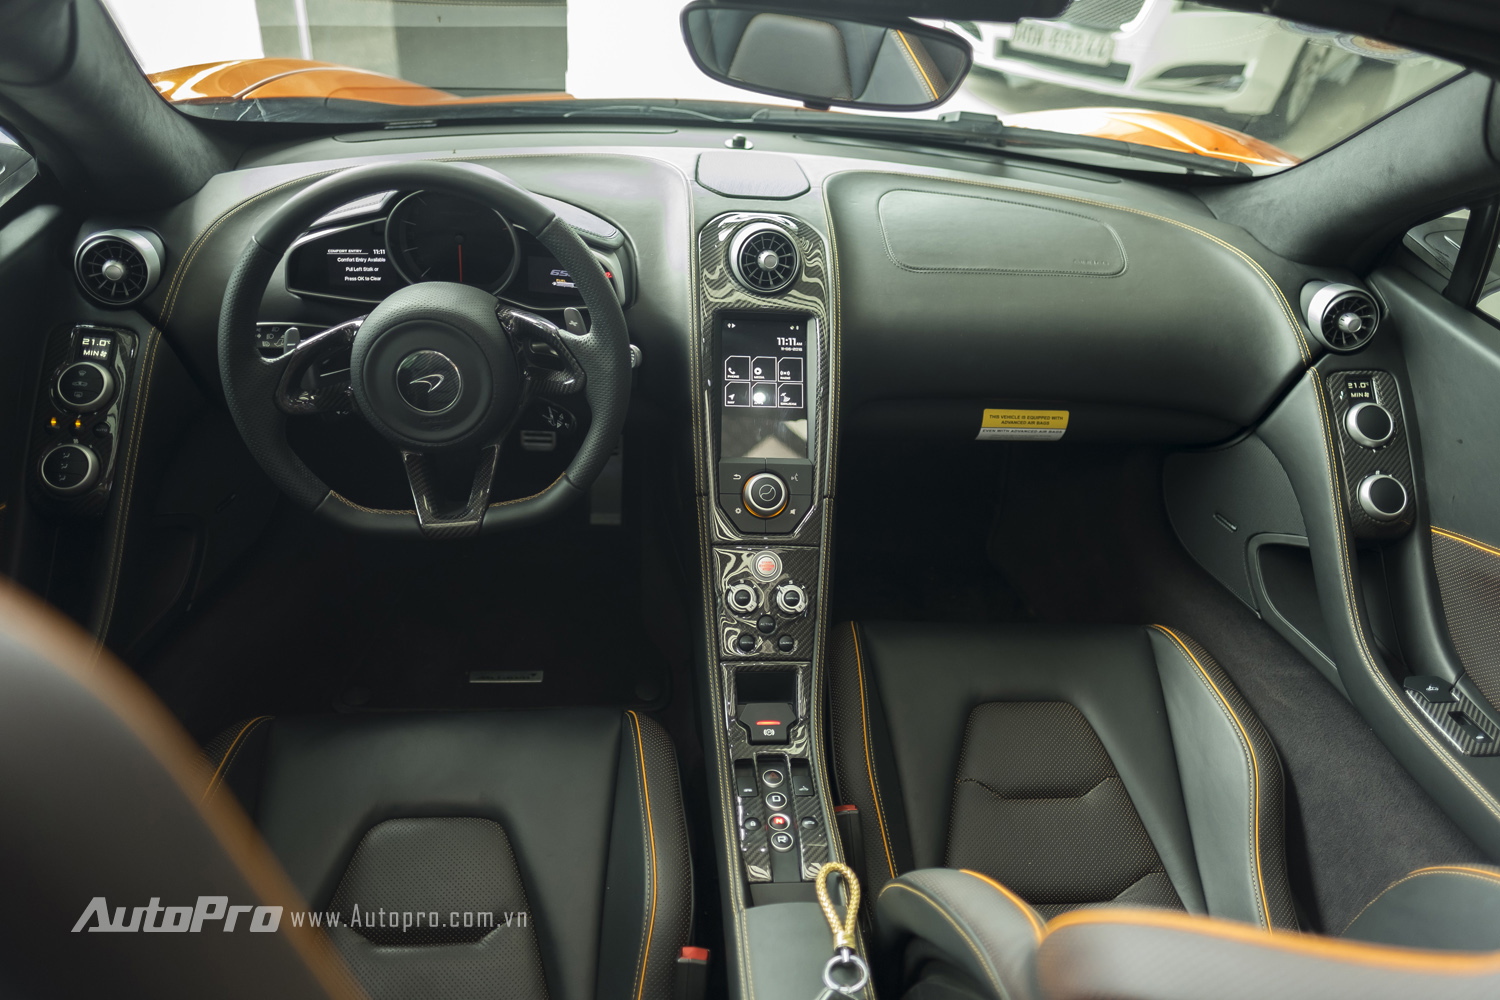 
Nhiều chi tiết ngoại và nội thất của McLaren 650S Spider được làm bằng sợi carbon như vỏ gương chiếu hậu, bậc cửa hay bảng táp lô. Trong khi đó, ghế thể thao được bọc da Alcantara cao cấp.
